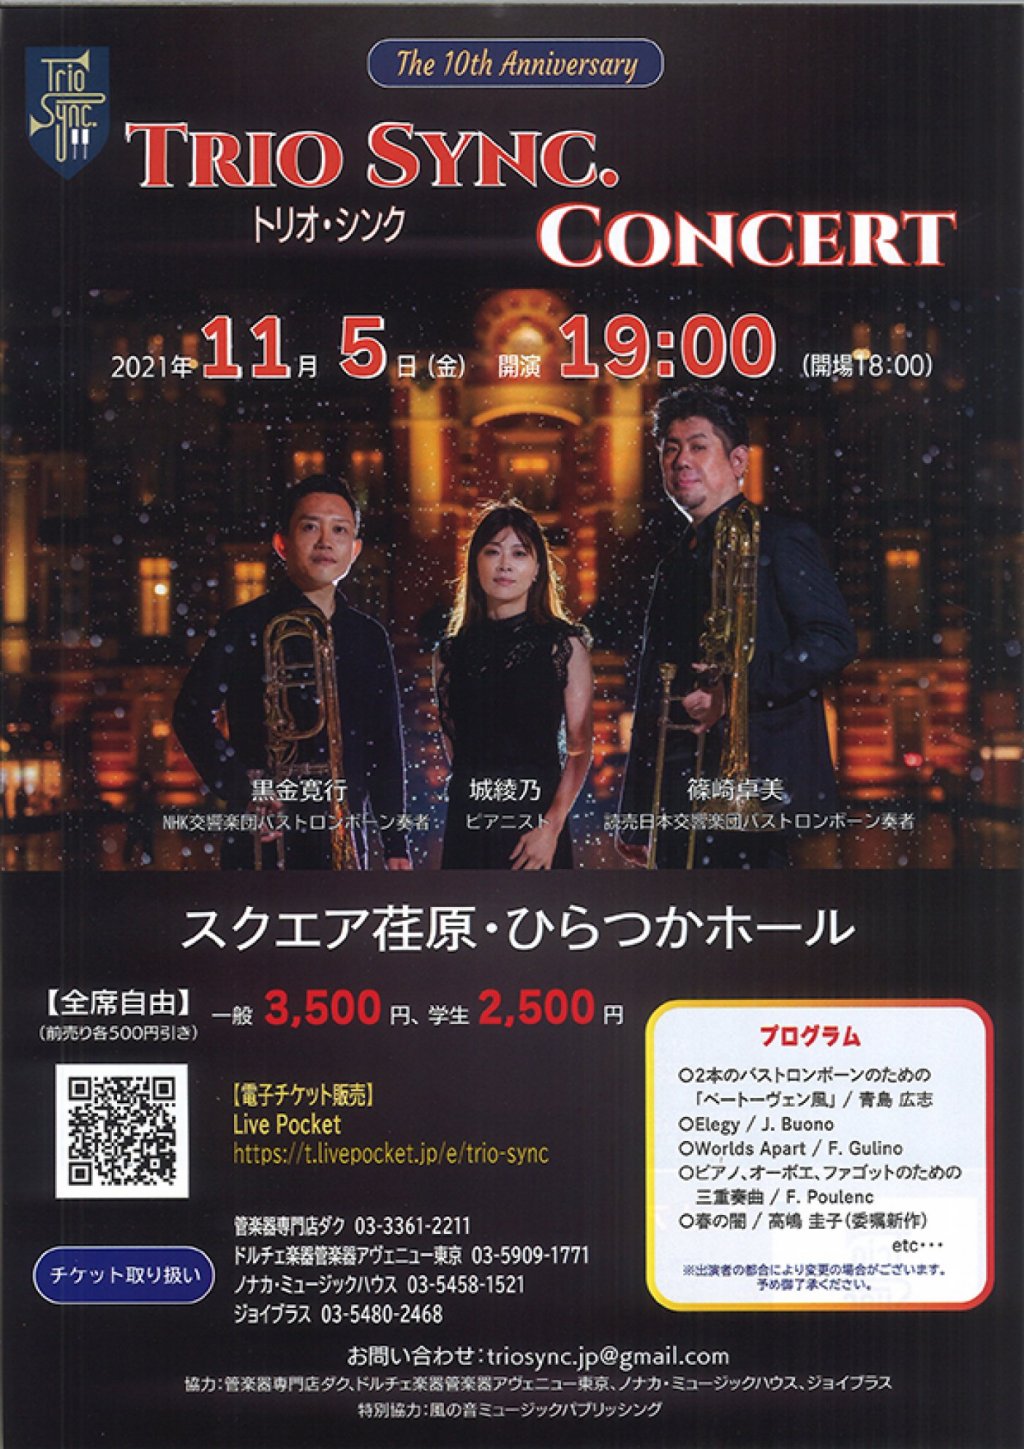 The 10th Anniversary Trio Sync. Concert